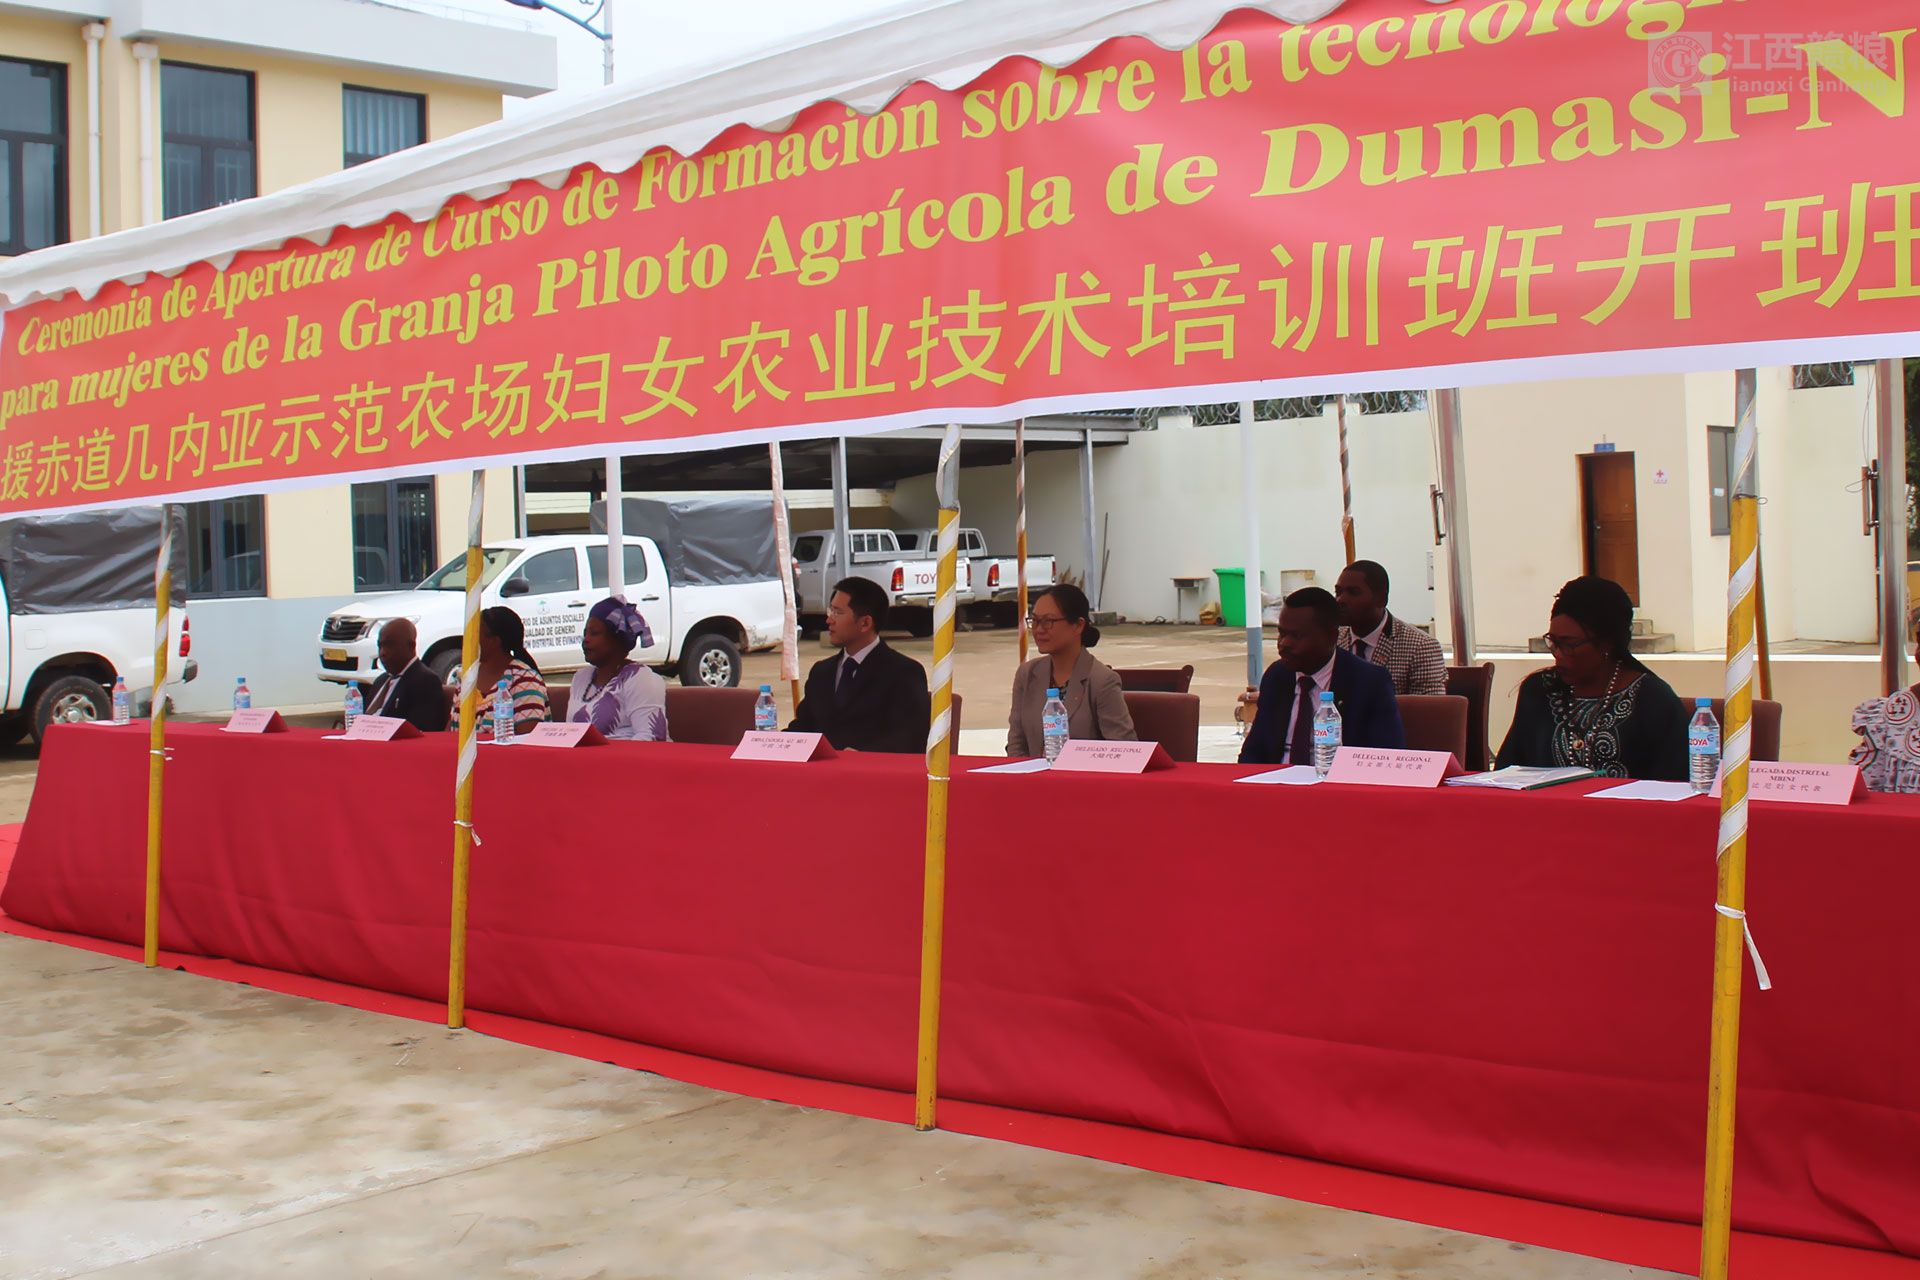 援赤道几内亚示范农场妇女农业技术培训班开班  亓玫大使、苏建国参赞出席